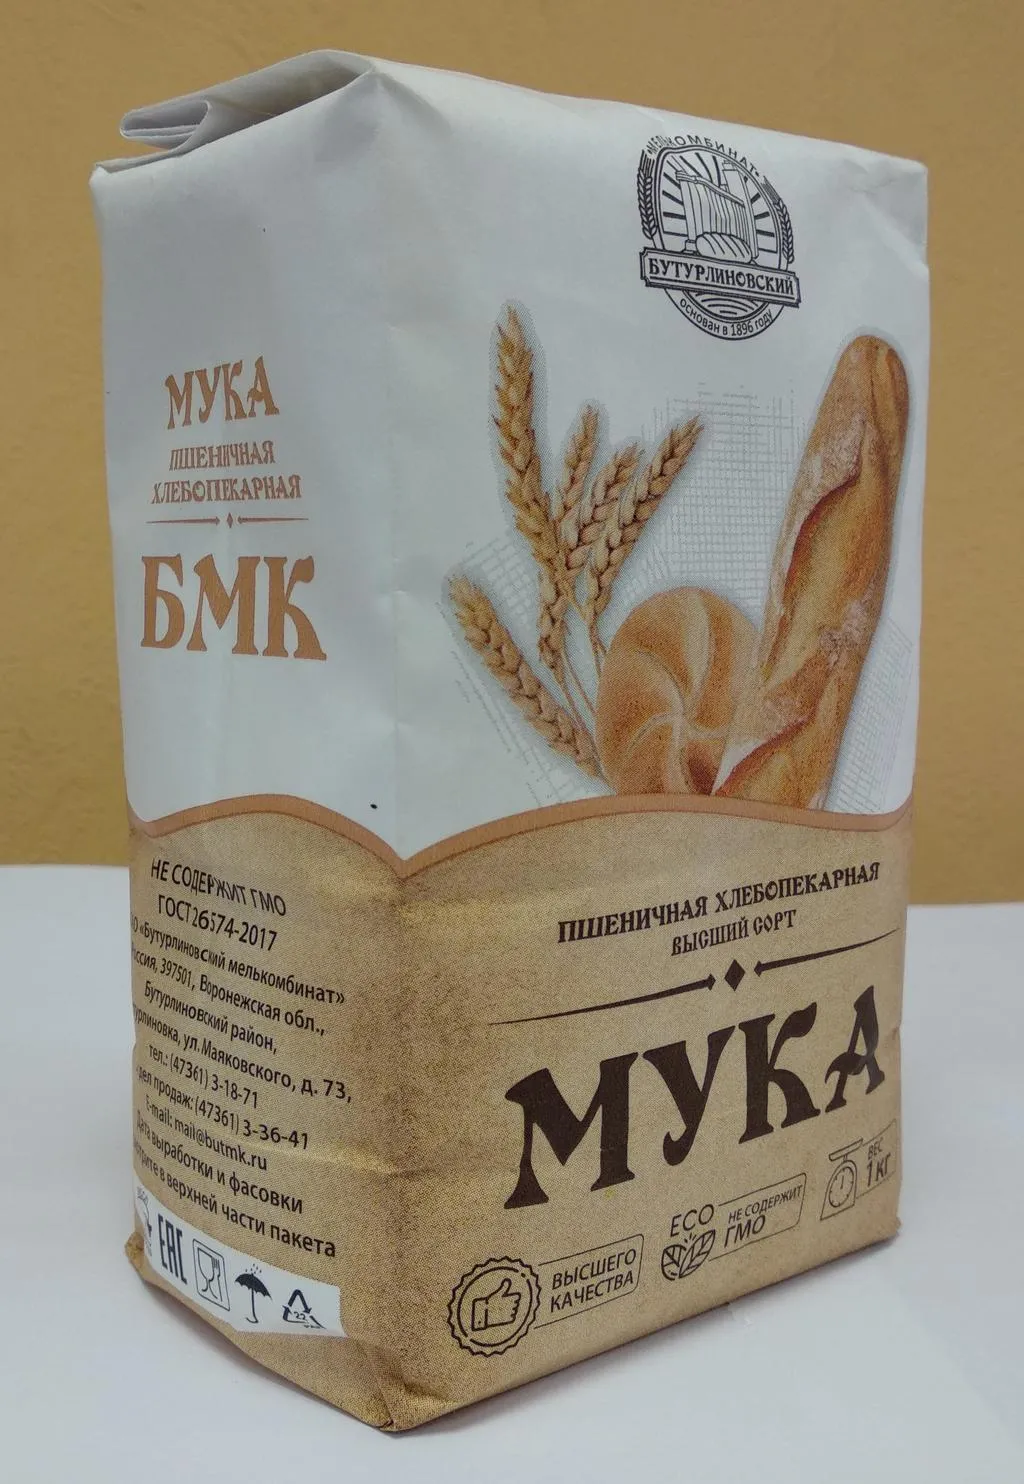 мука пшеничная и ржаная 2-50кг, бестарно в Воронеже